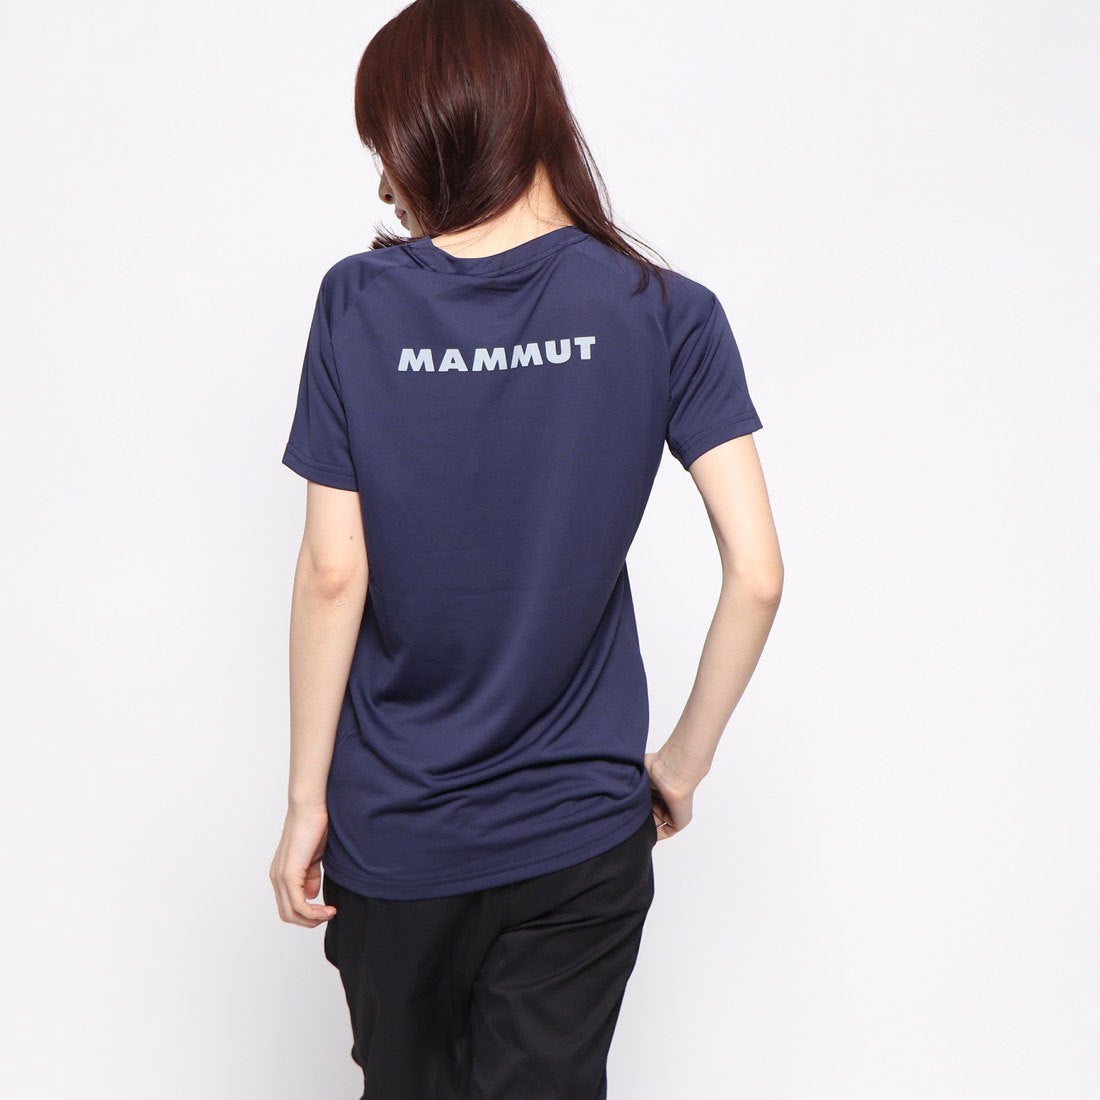 マムート Tシャツ - 登山用品